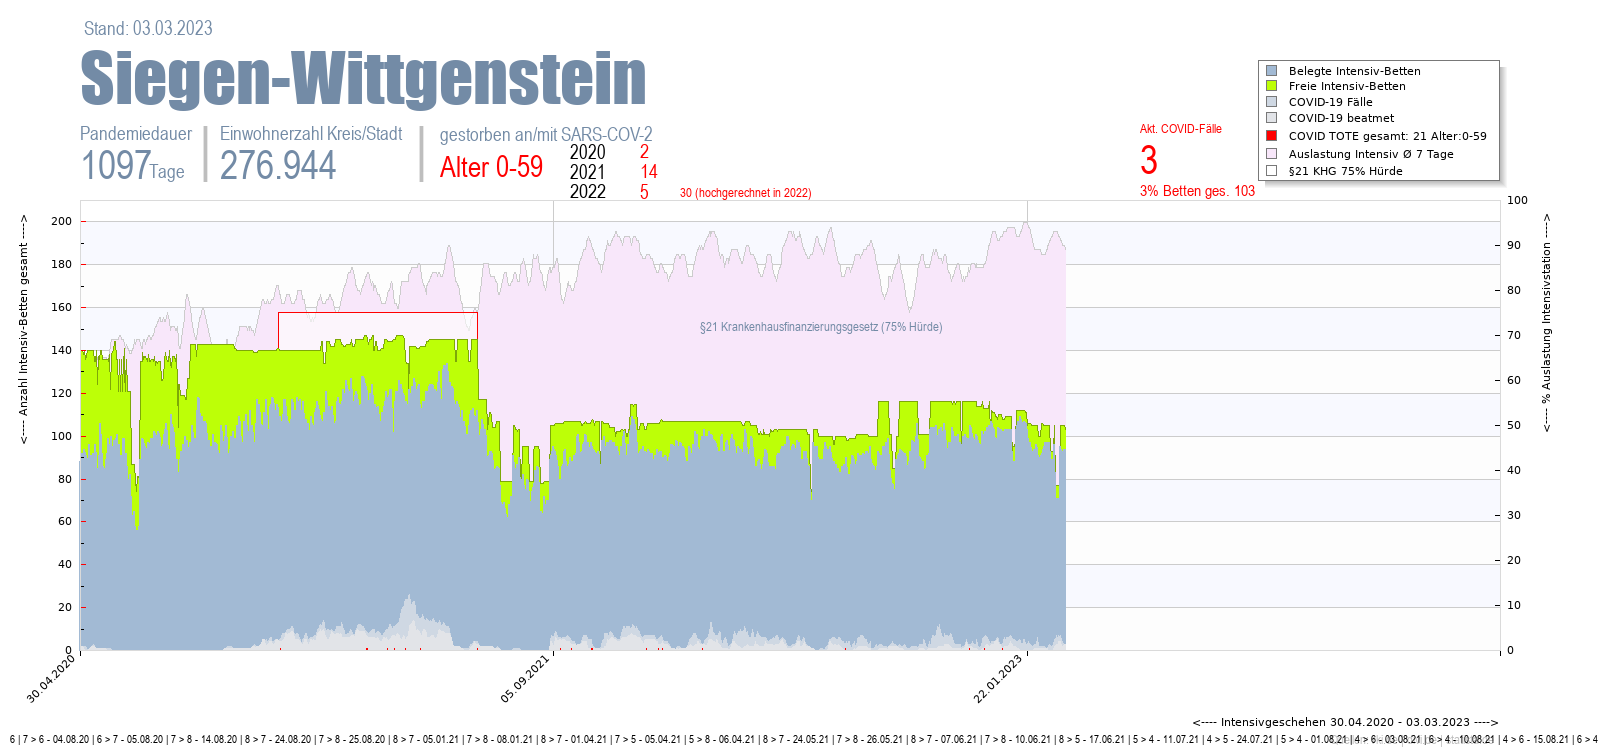 Intensivstation Auslastung Siegen-Wittgenstein Alter 0-59